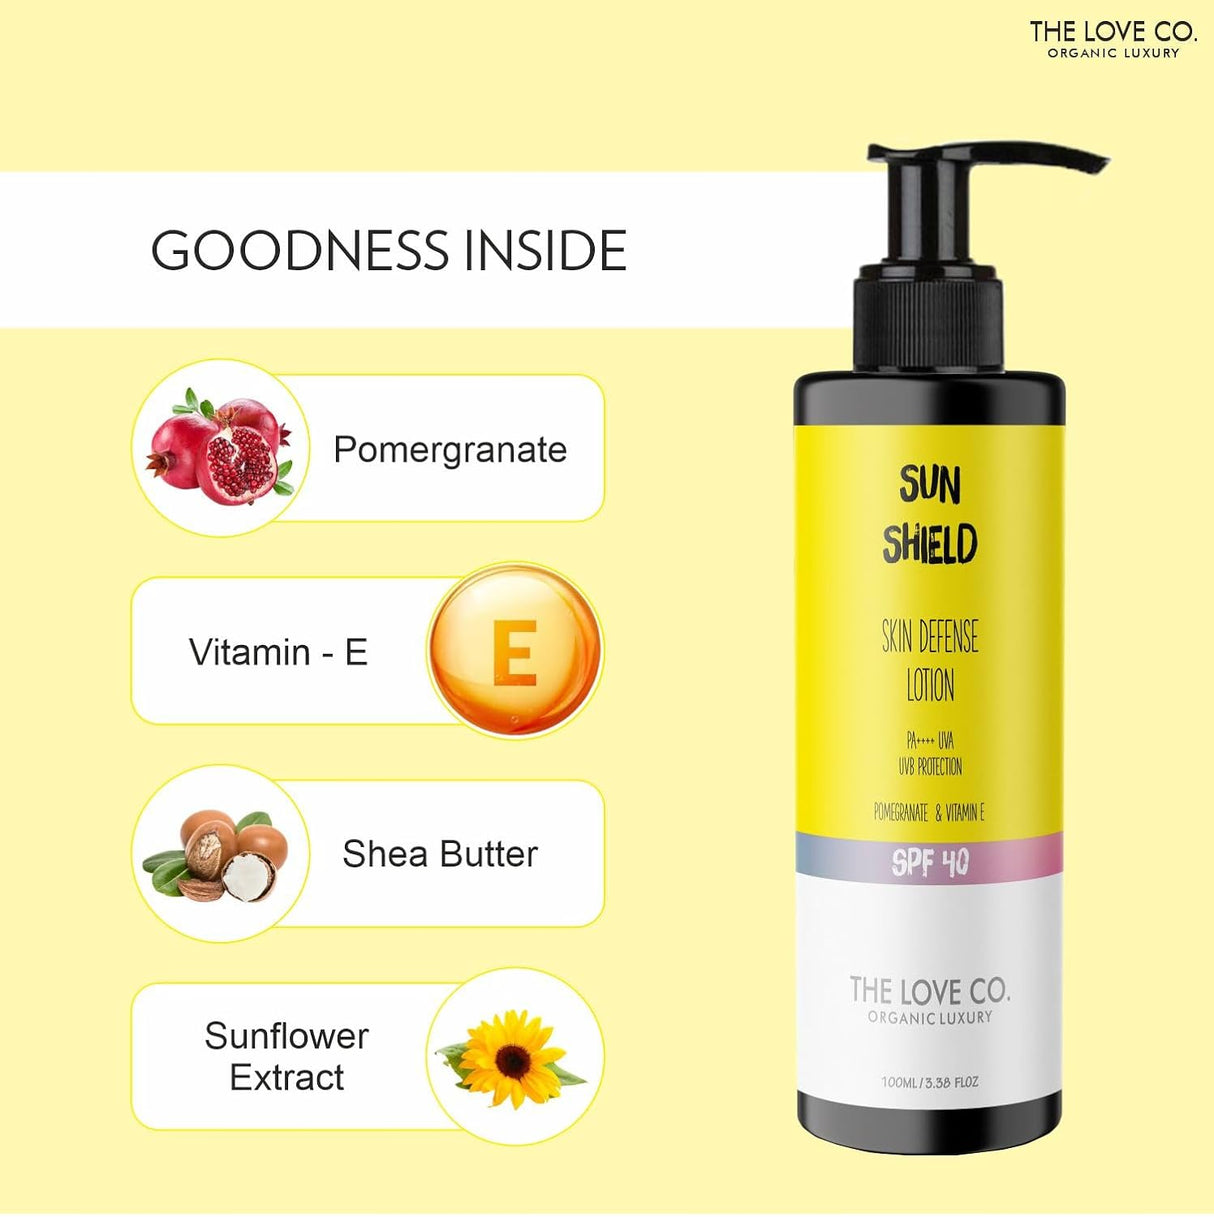 Sun Shield Skin Defence Suncreen Lotion